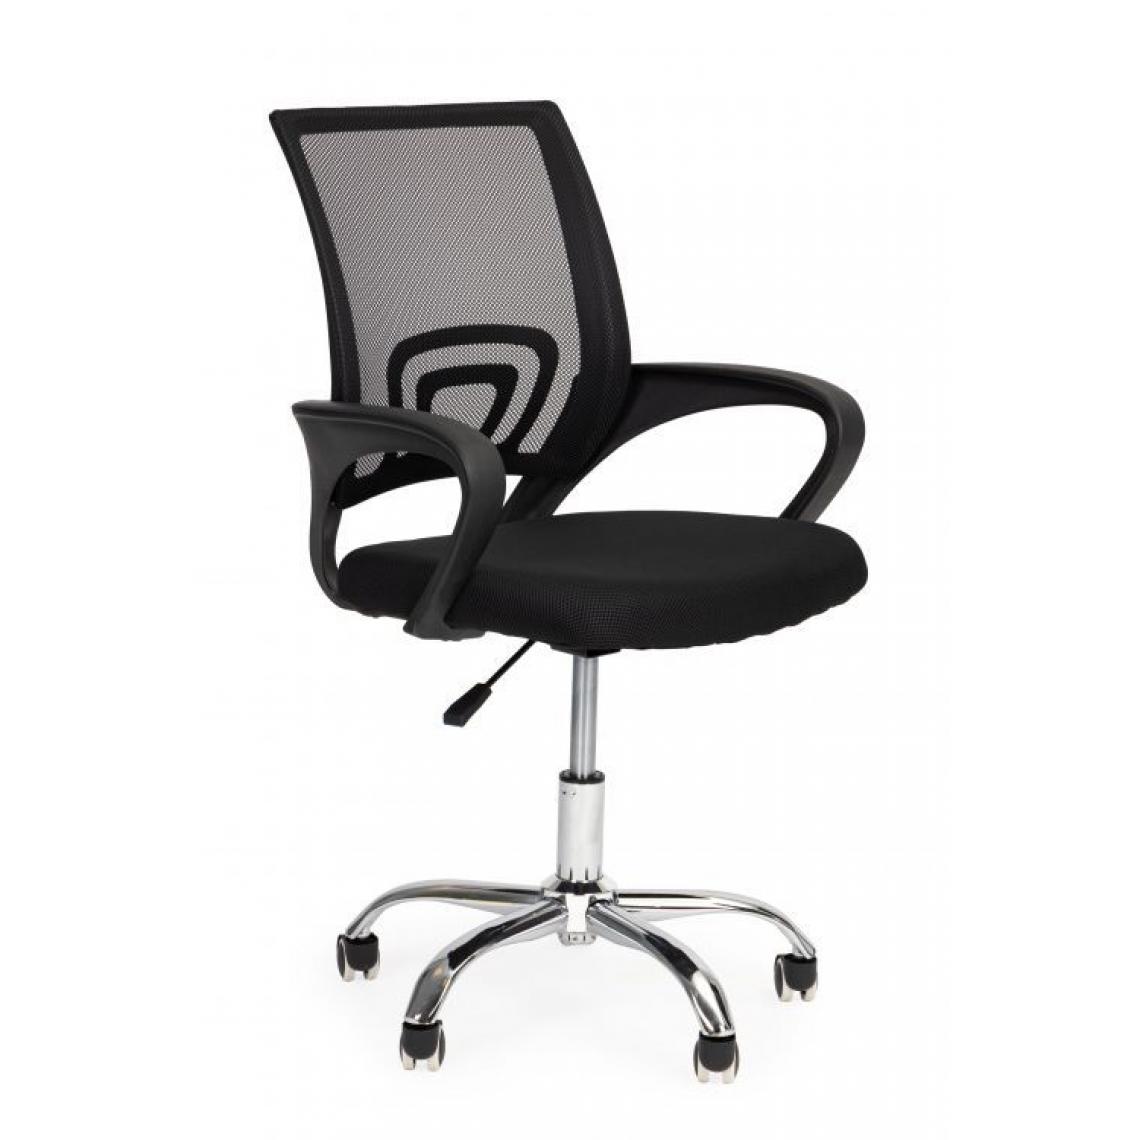 Hucoco - MSTORE - Fauteuil de bureau style moderne - 58.5x55x86-96 - Hauteur réglable - Chaise pivotante - Noir - Chaises